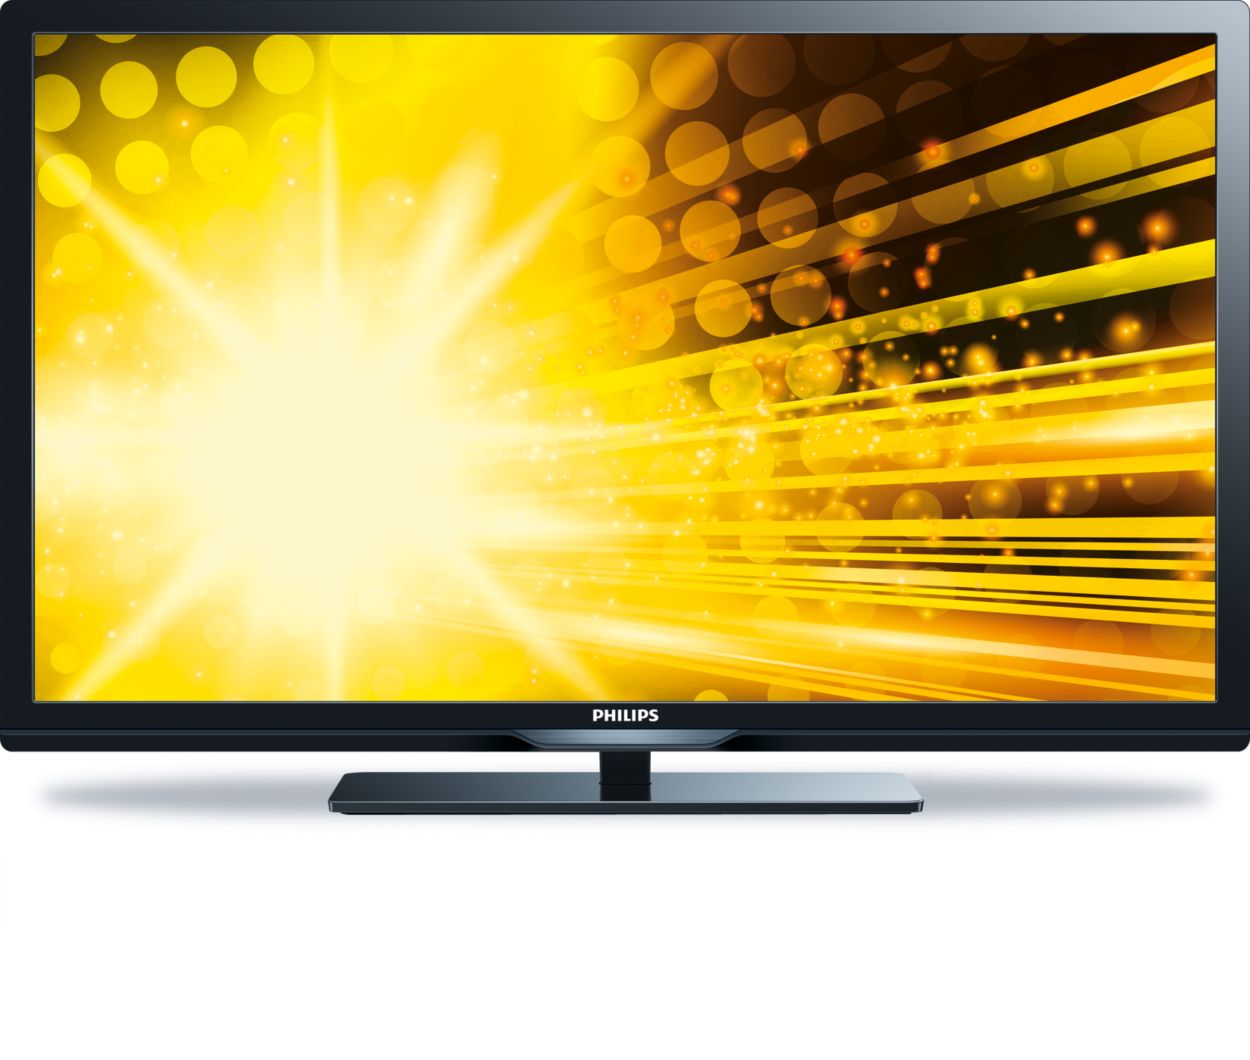 Tecnología 2013: smart tv o no smart tv